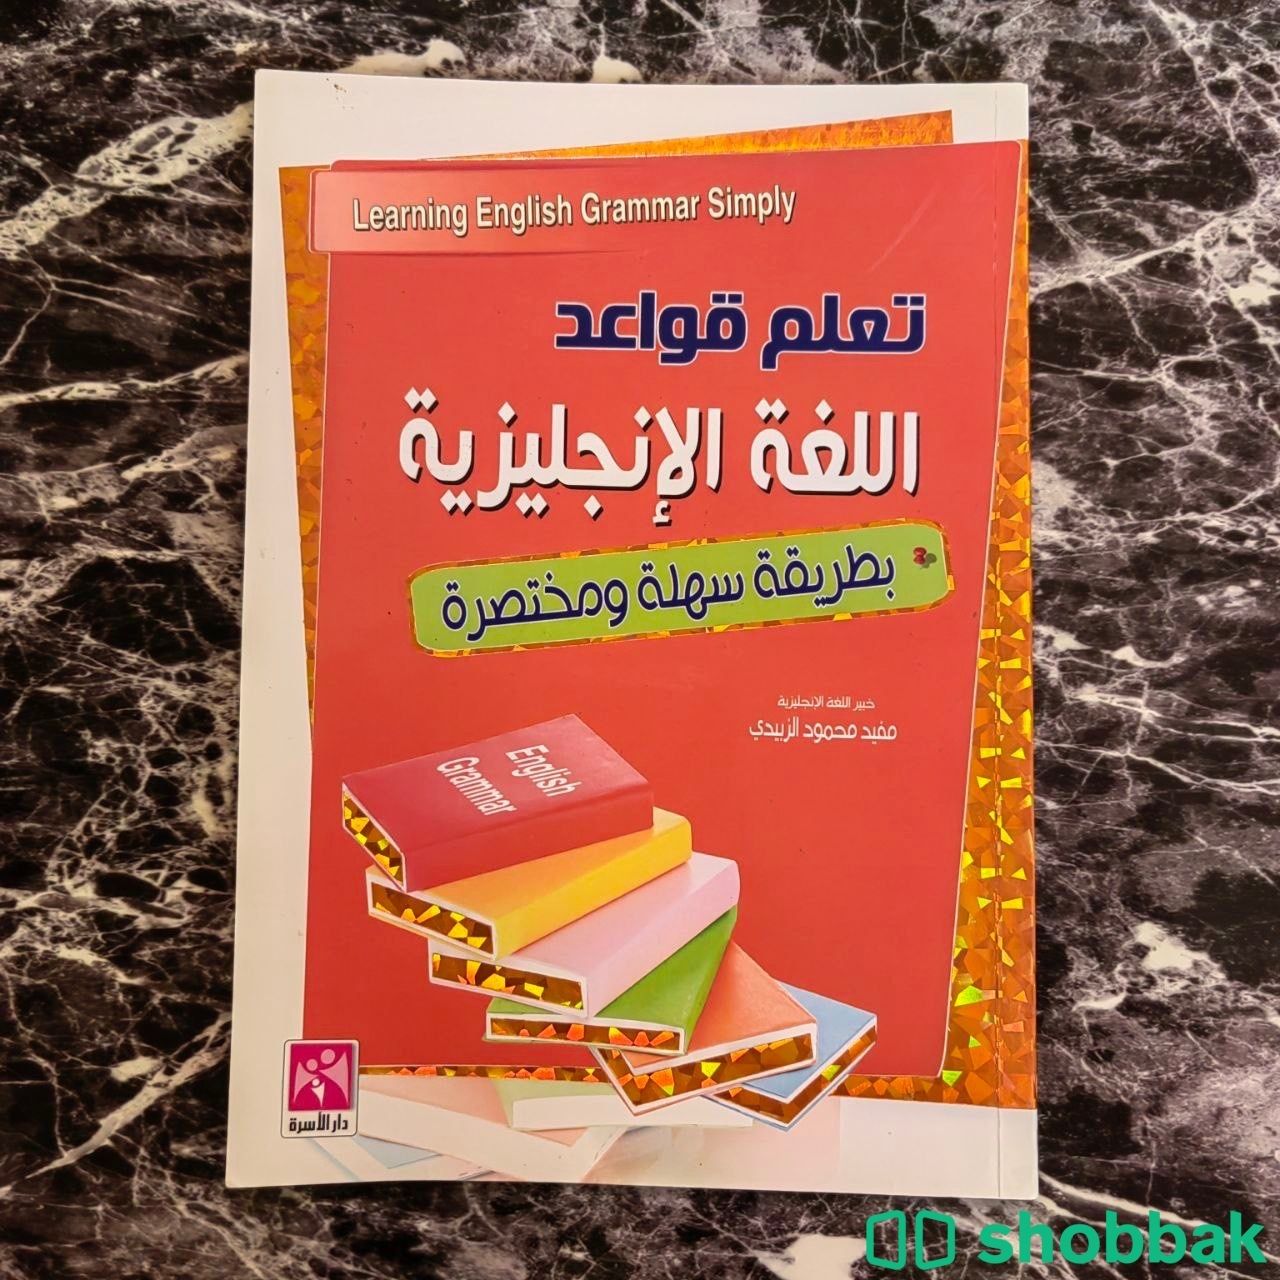 كتاب تعليم اللغة الإنجليزية للمبتدئين بأقل الأسعار Shobbak Saudi Arabia